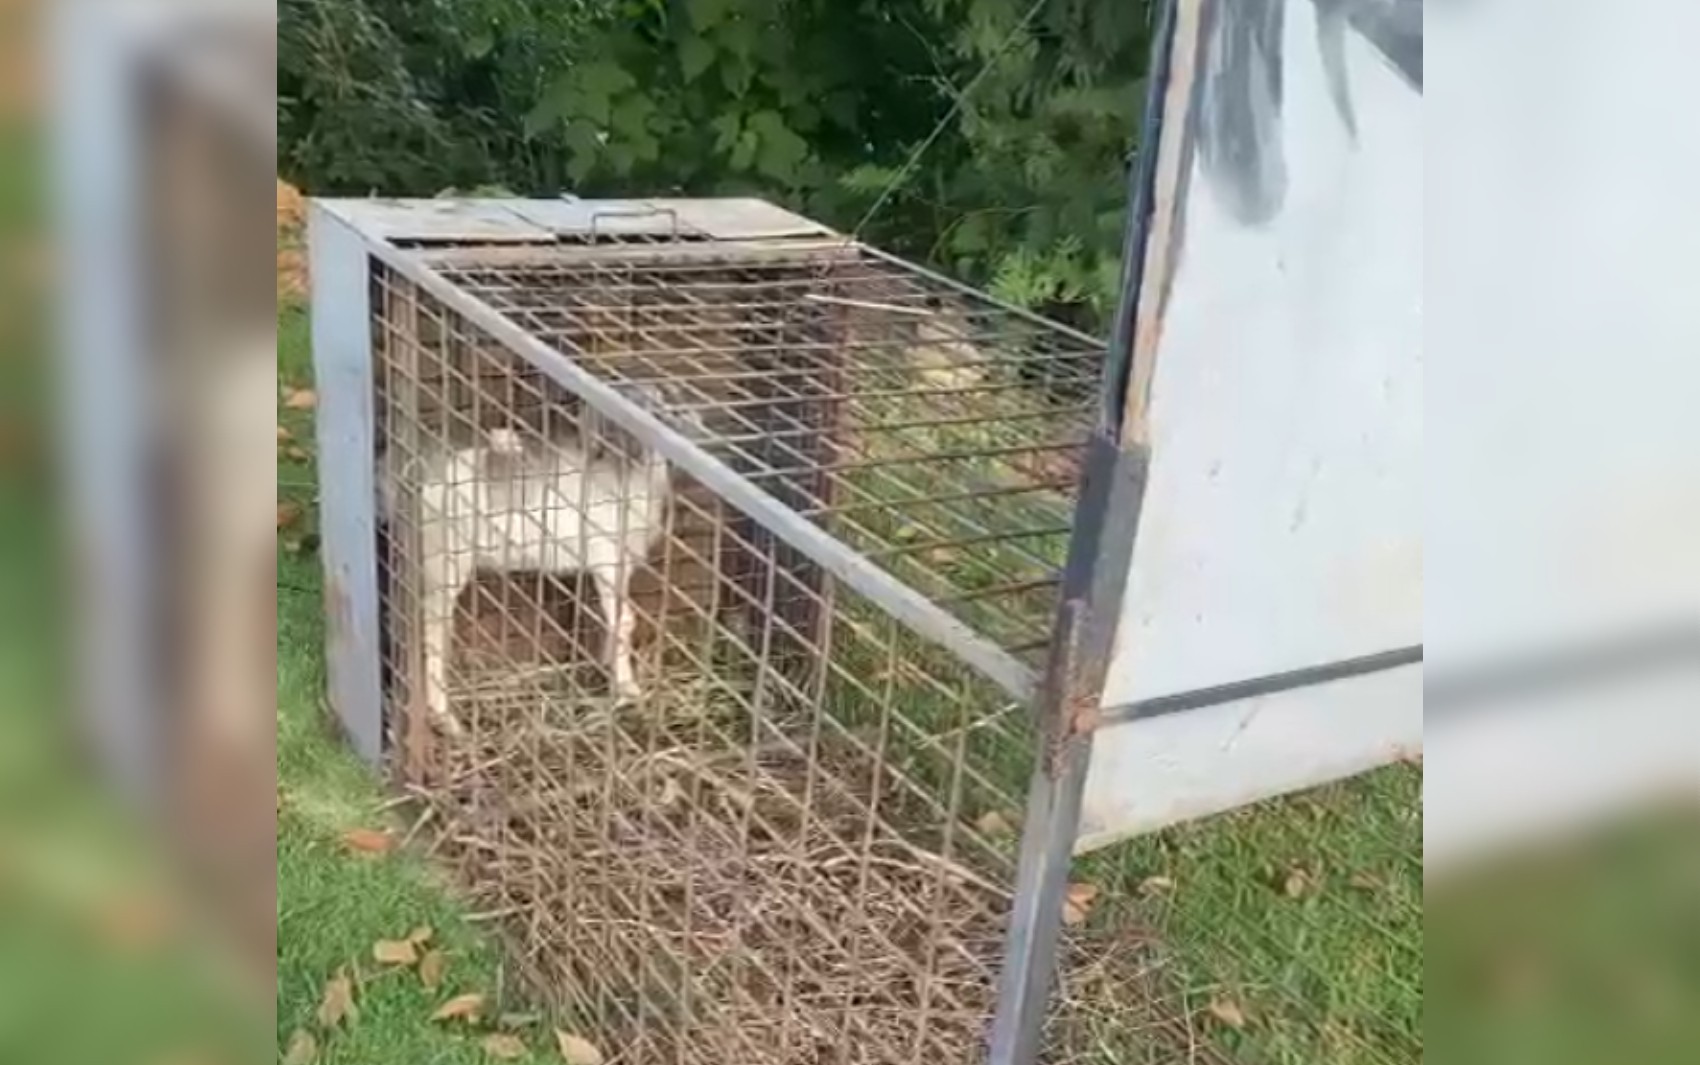 Filhote de cabra é colocado em armadilha para capturar onça em condomínio de luxo em Goiânia; vídeo